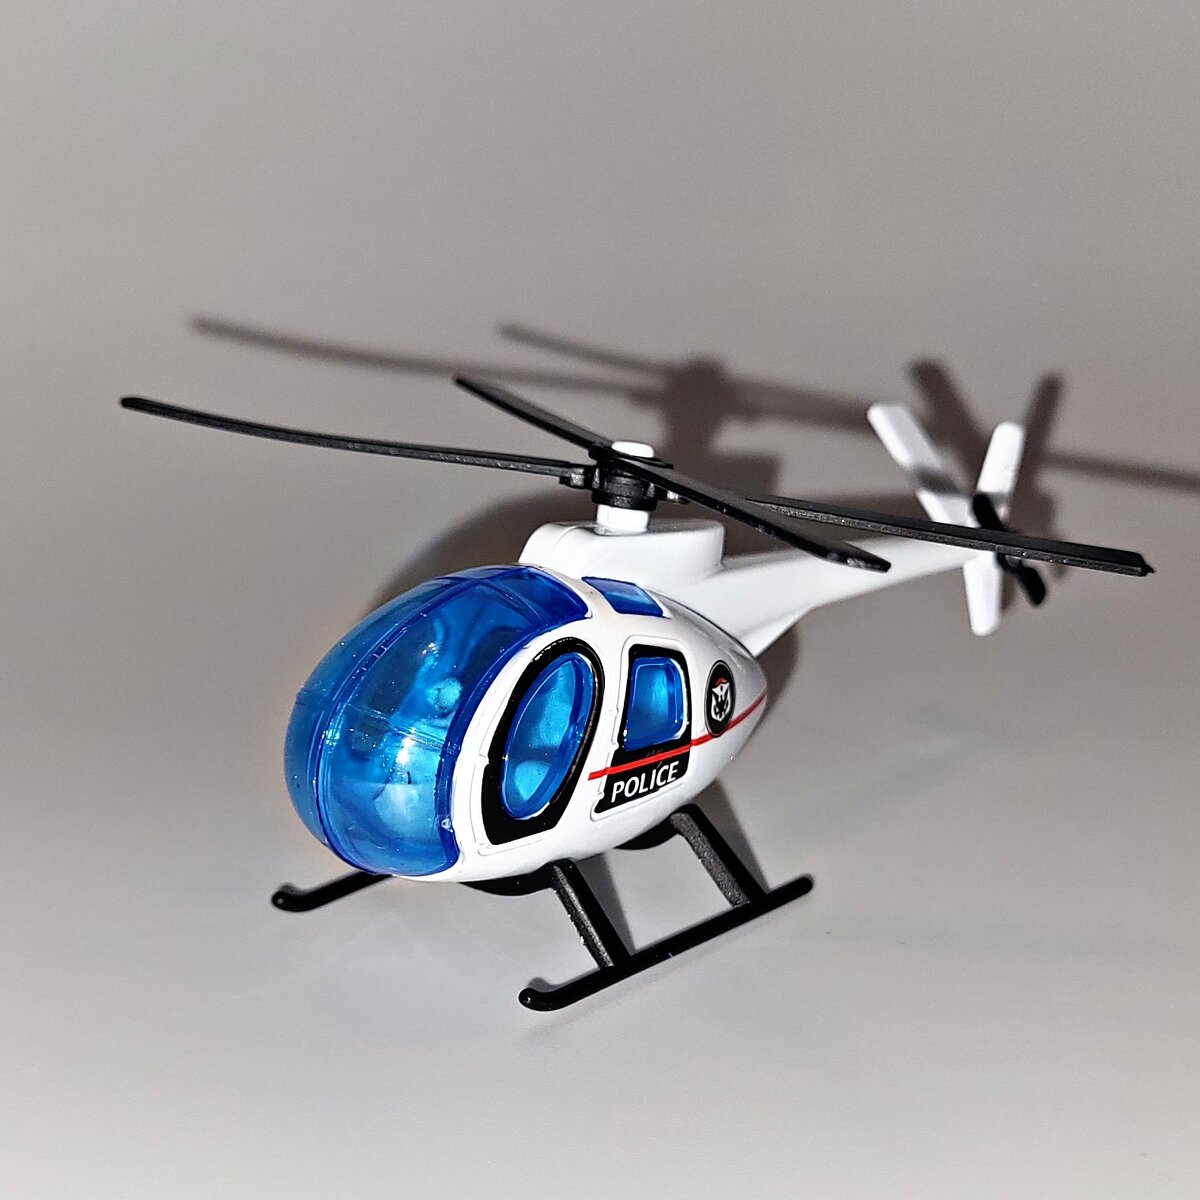 Стимпанк Вертолет 1/48 : Форум моделистов